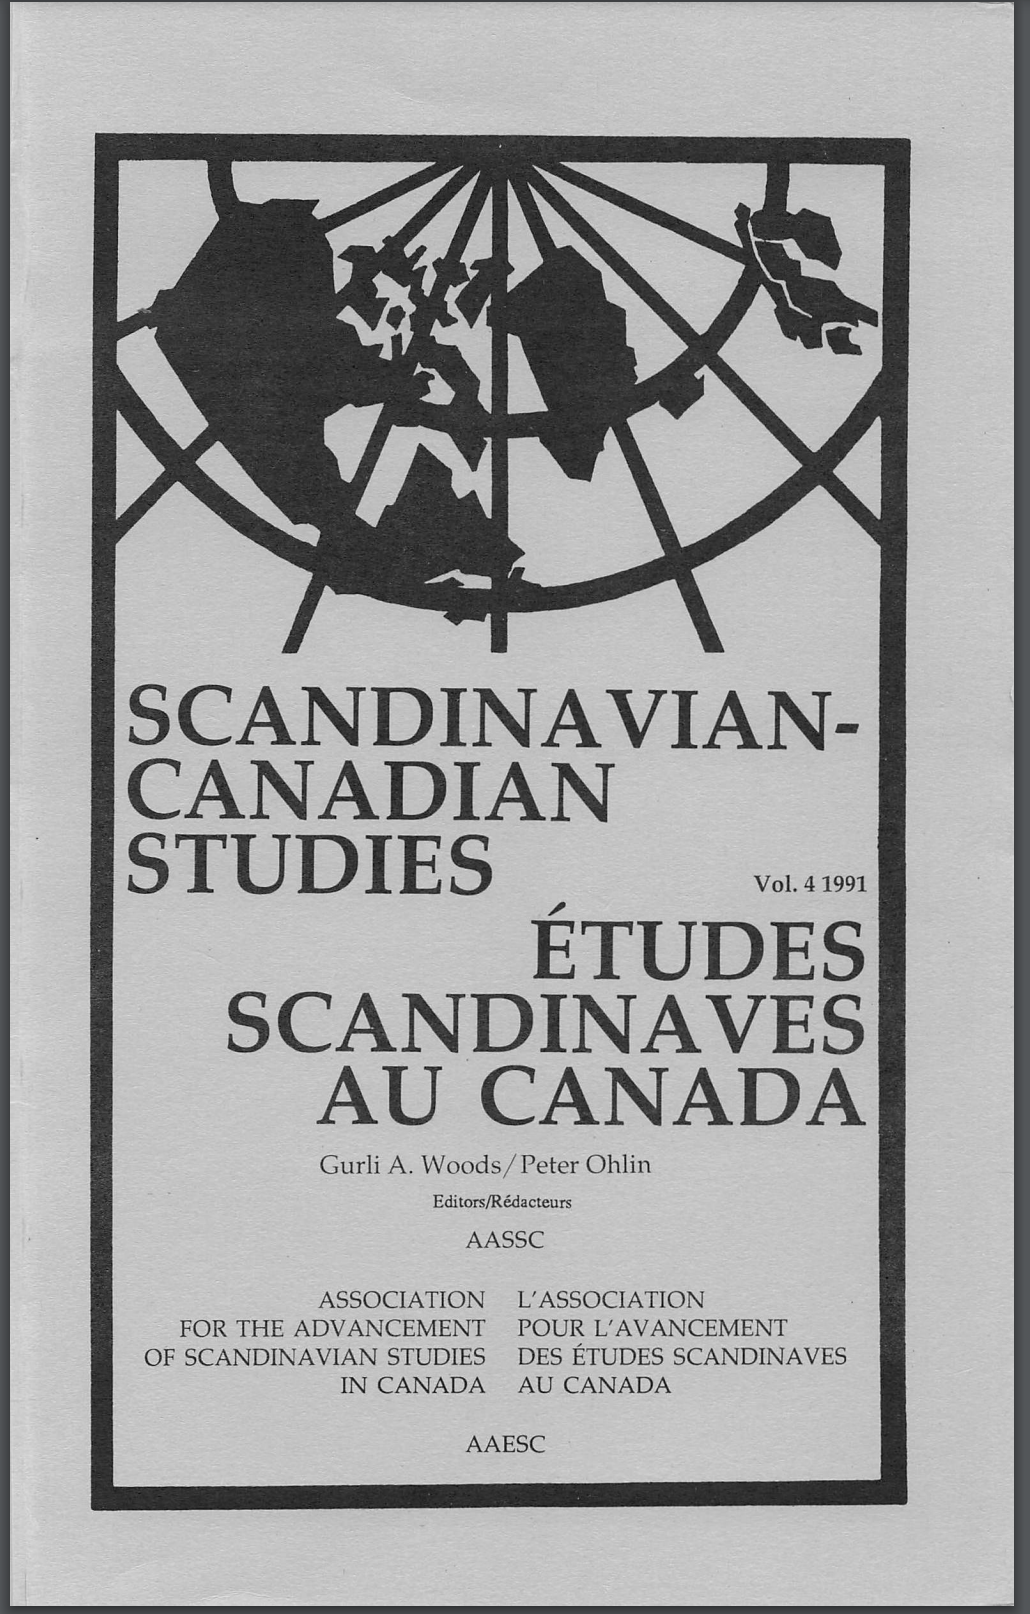 					View Vol. 4 (1991): SCANDINAVIAN-CANADIAN STUDIES/ÉTUDES SCANDINAVES AU CANADA Vol. 4 (1991)
				